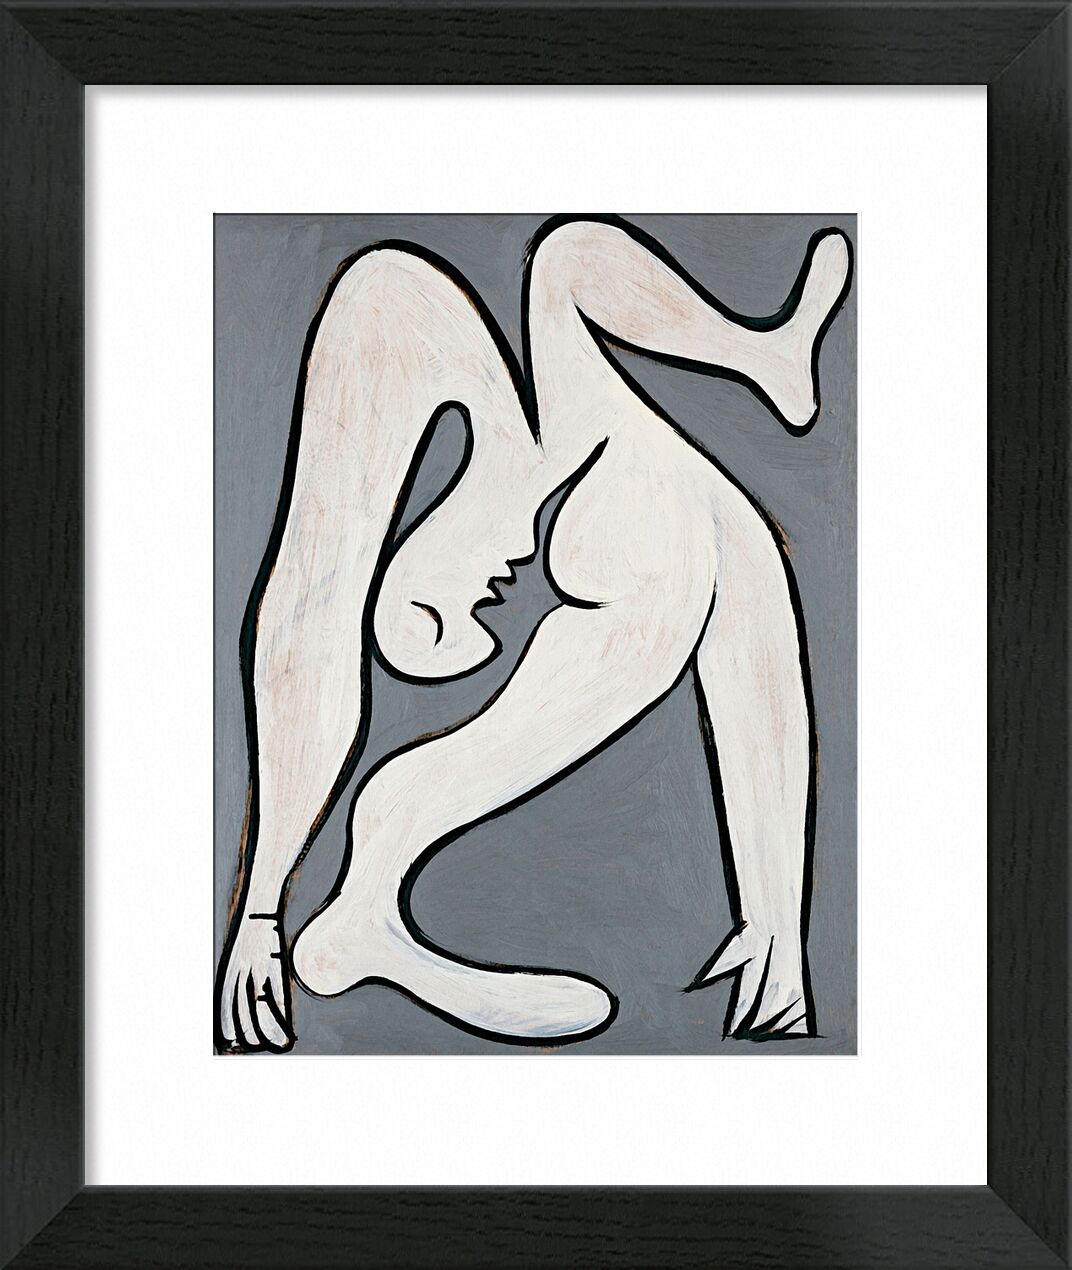 The Acrobat - Picasso von Bildende Kunst, Prodi Art, Akrobat, Zeichnung, Malerei, Picasso